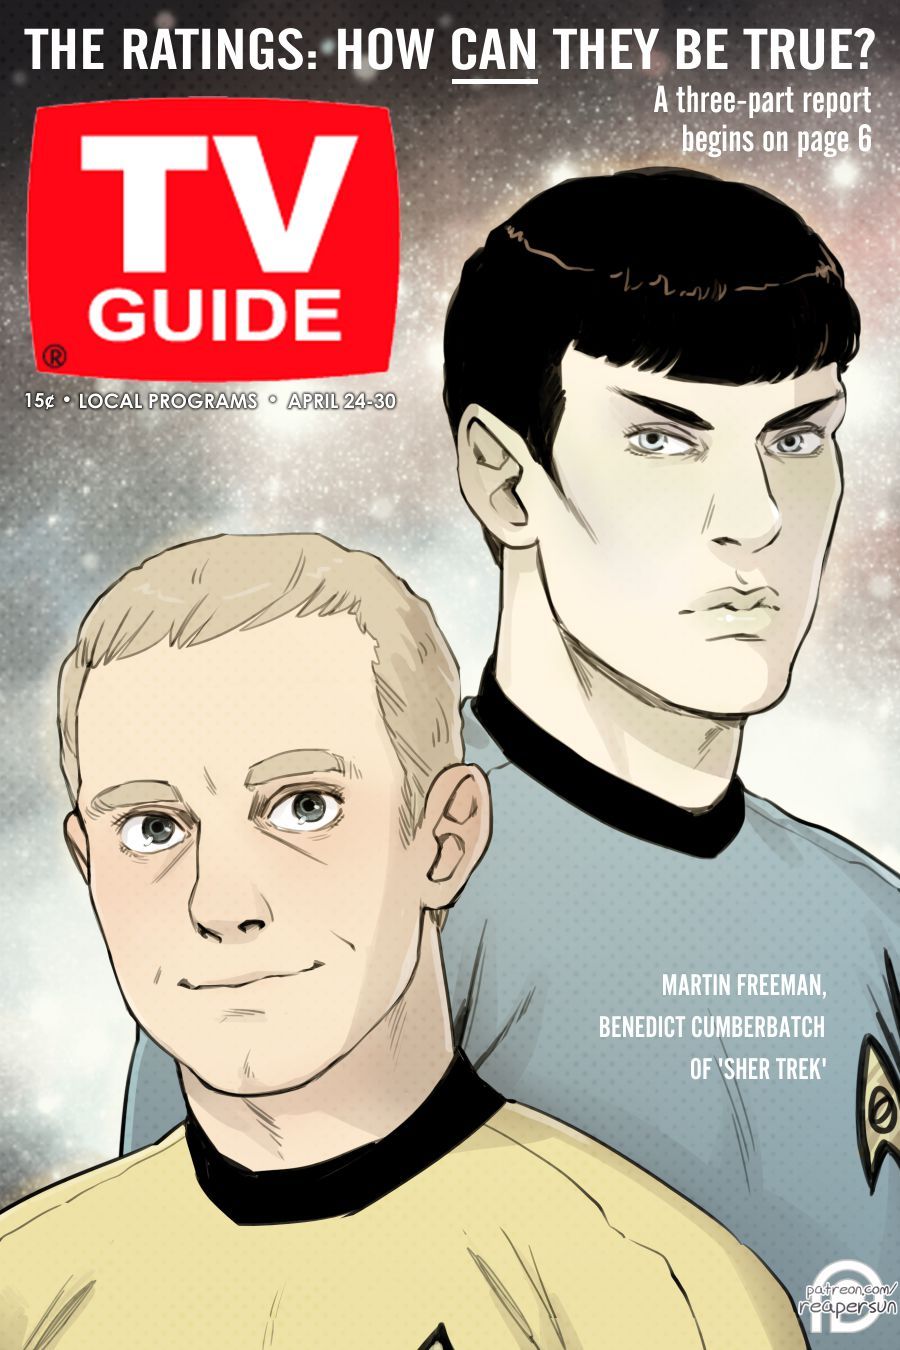 caresatoland: Here’s the debut TV Guide cover for the Sherlock/Star Trek crossover